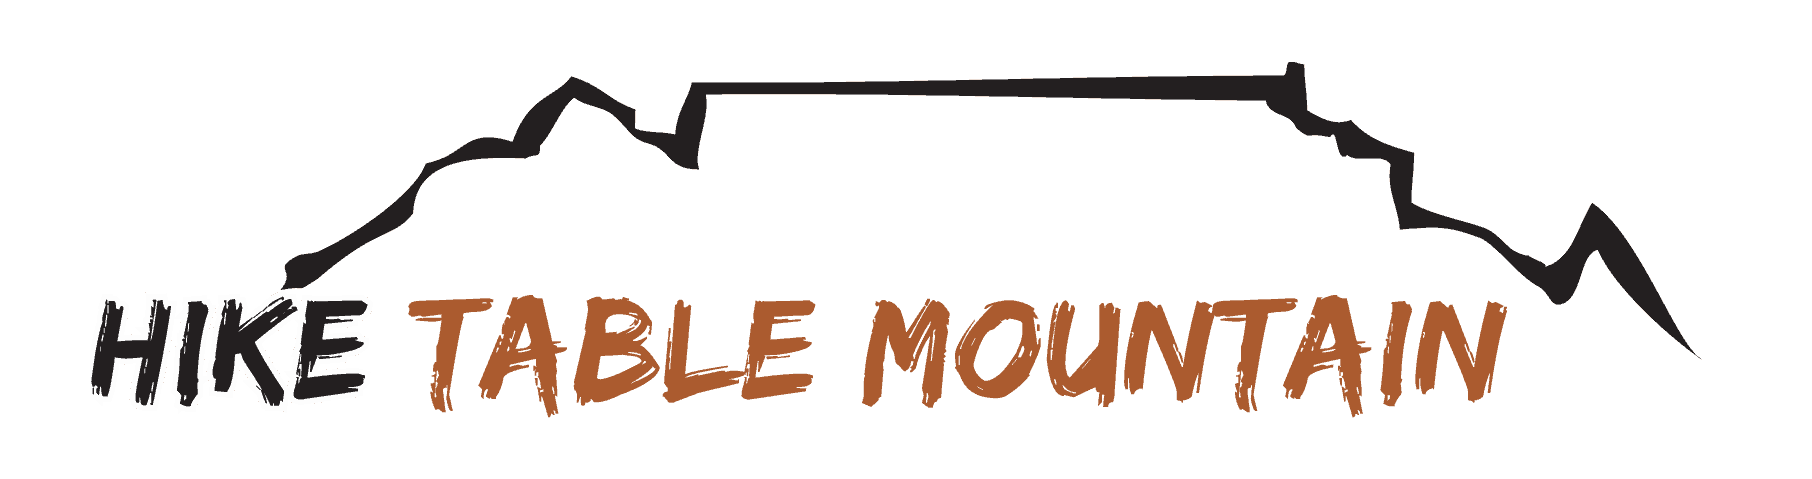 Mountain Logo Maker | Create a Mountain Logo | Fiverr